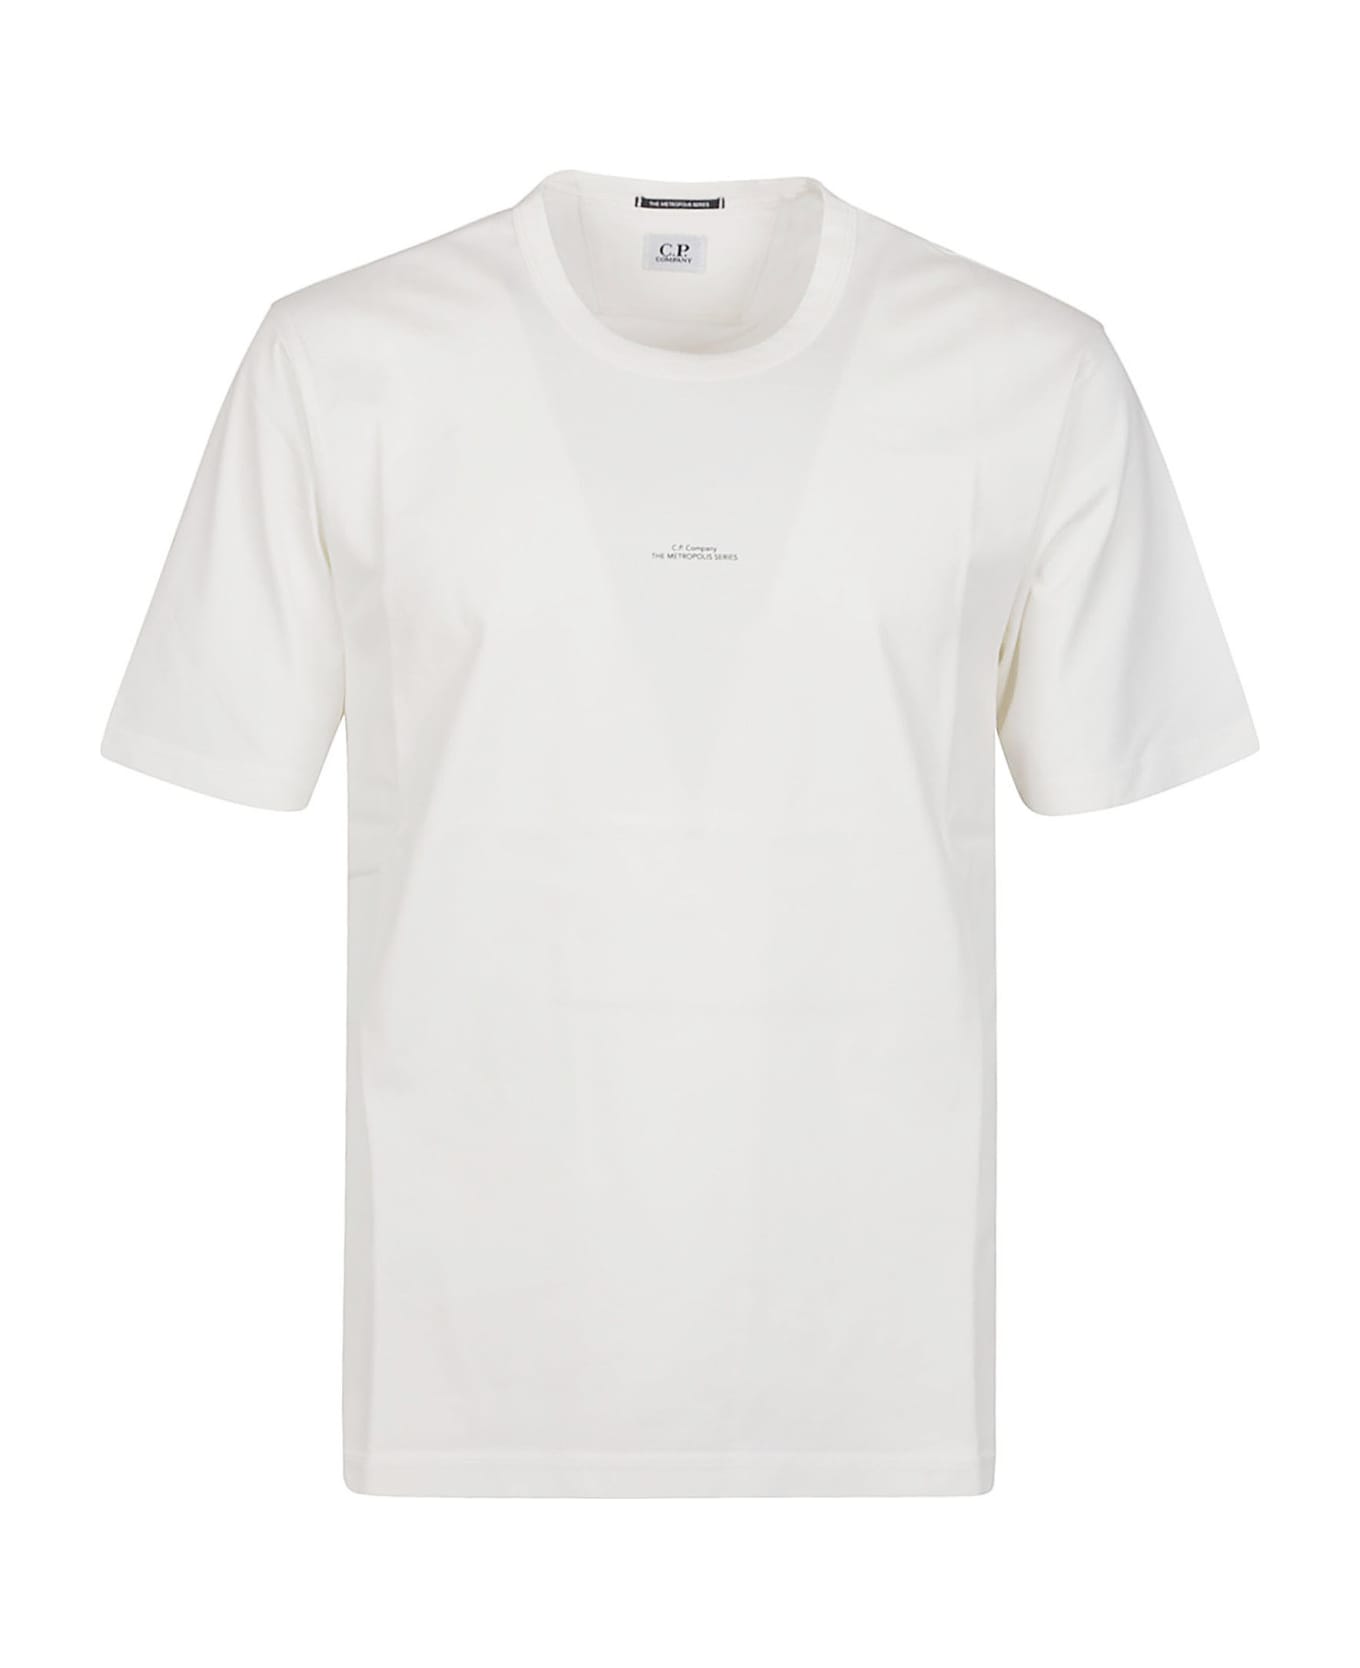 C.P. Company Metropolis Mercerized Jersey Logo Print T-shirt - White シャツ